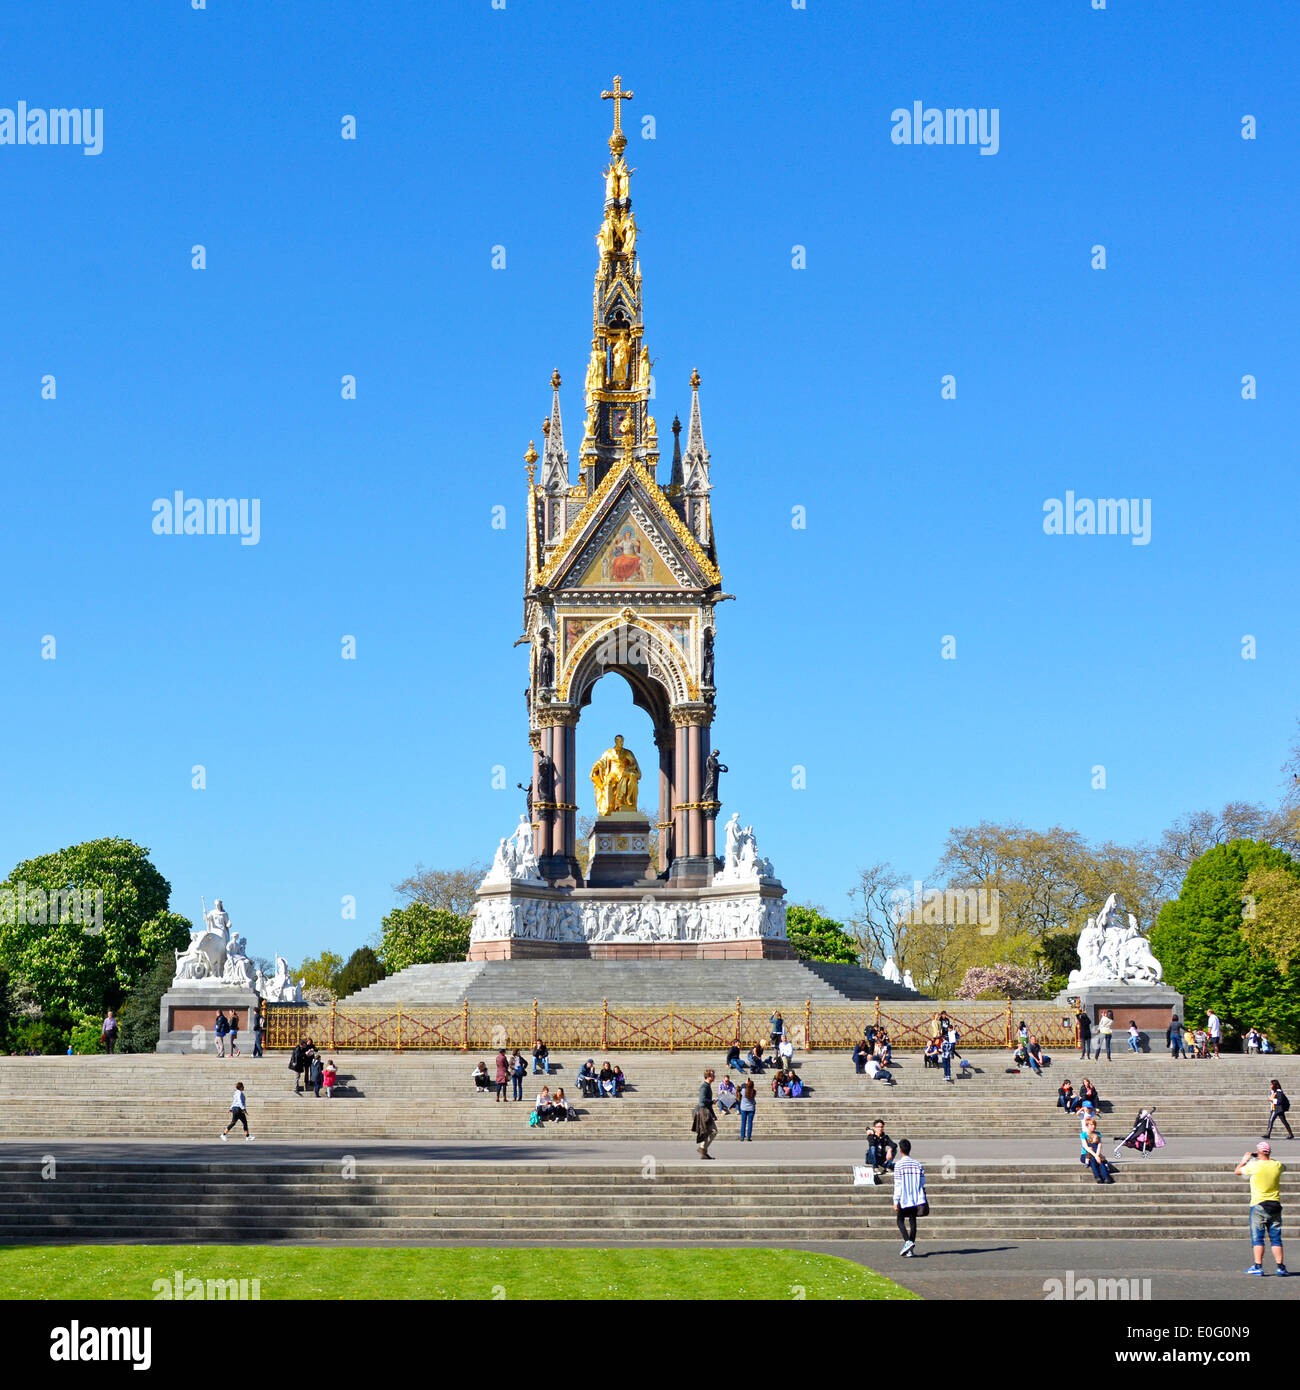 Storico monumento turistico vittoriano di Londra Albert Memorial nel paesaggio dei Kensington Gardens con il principe Alberto seduto giorno blu cielo Londra Inghilterra Regno Unito Foto Stock